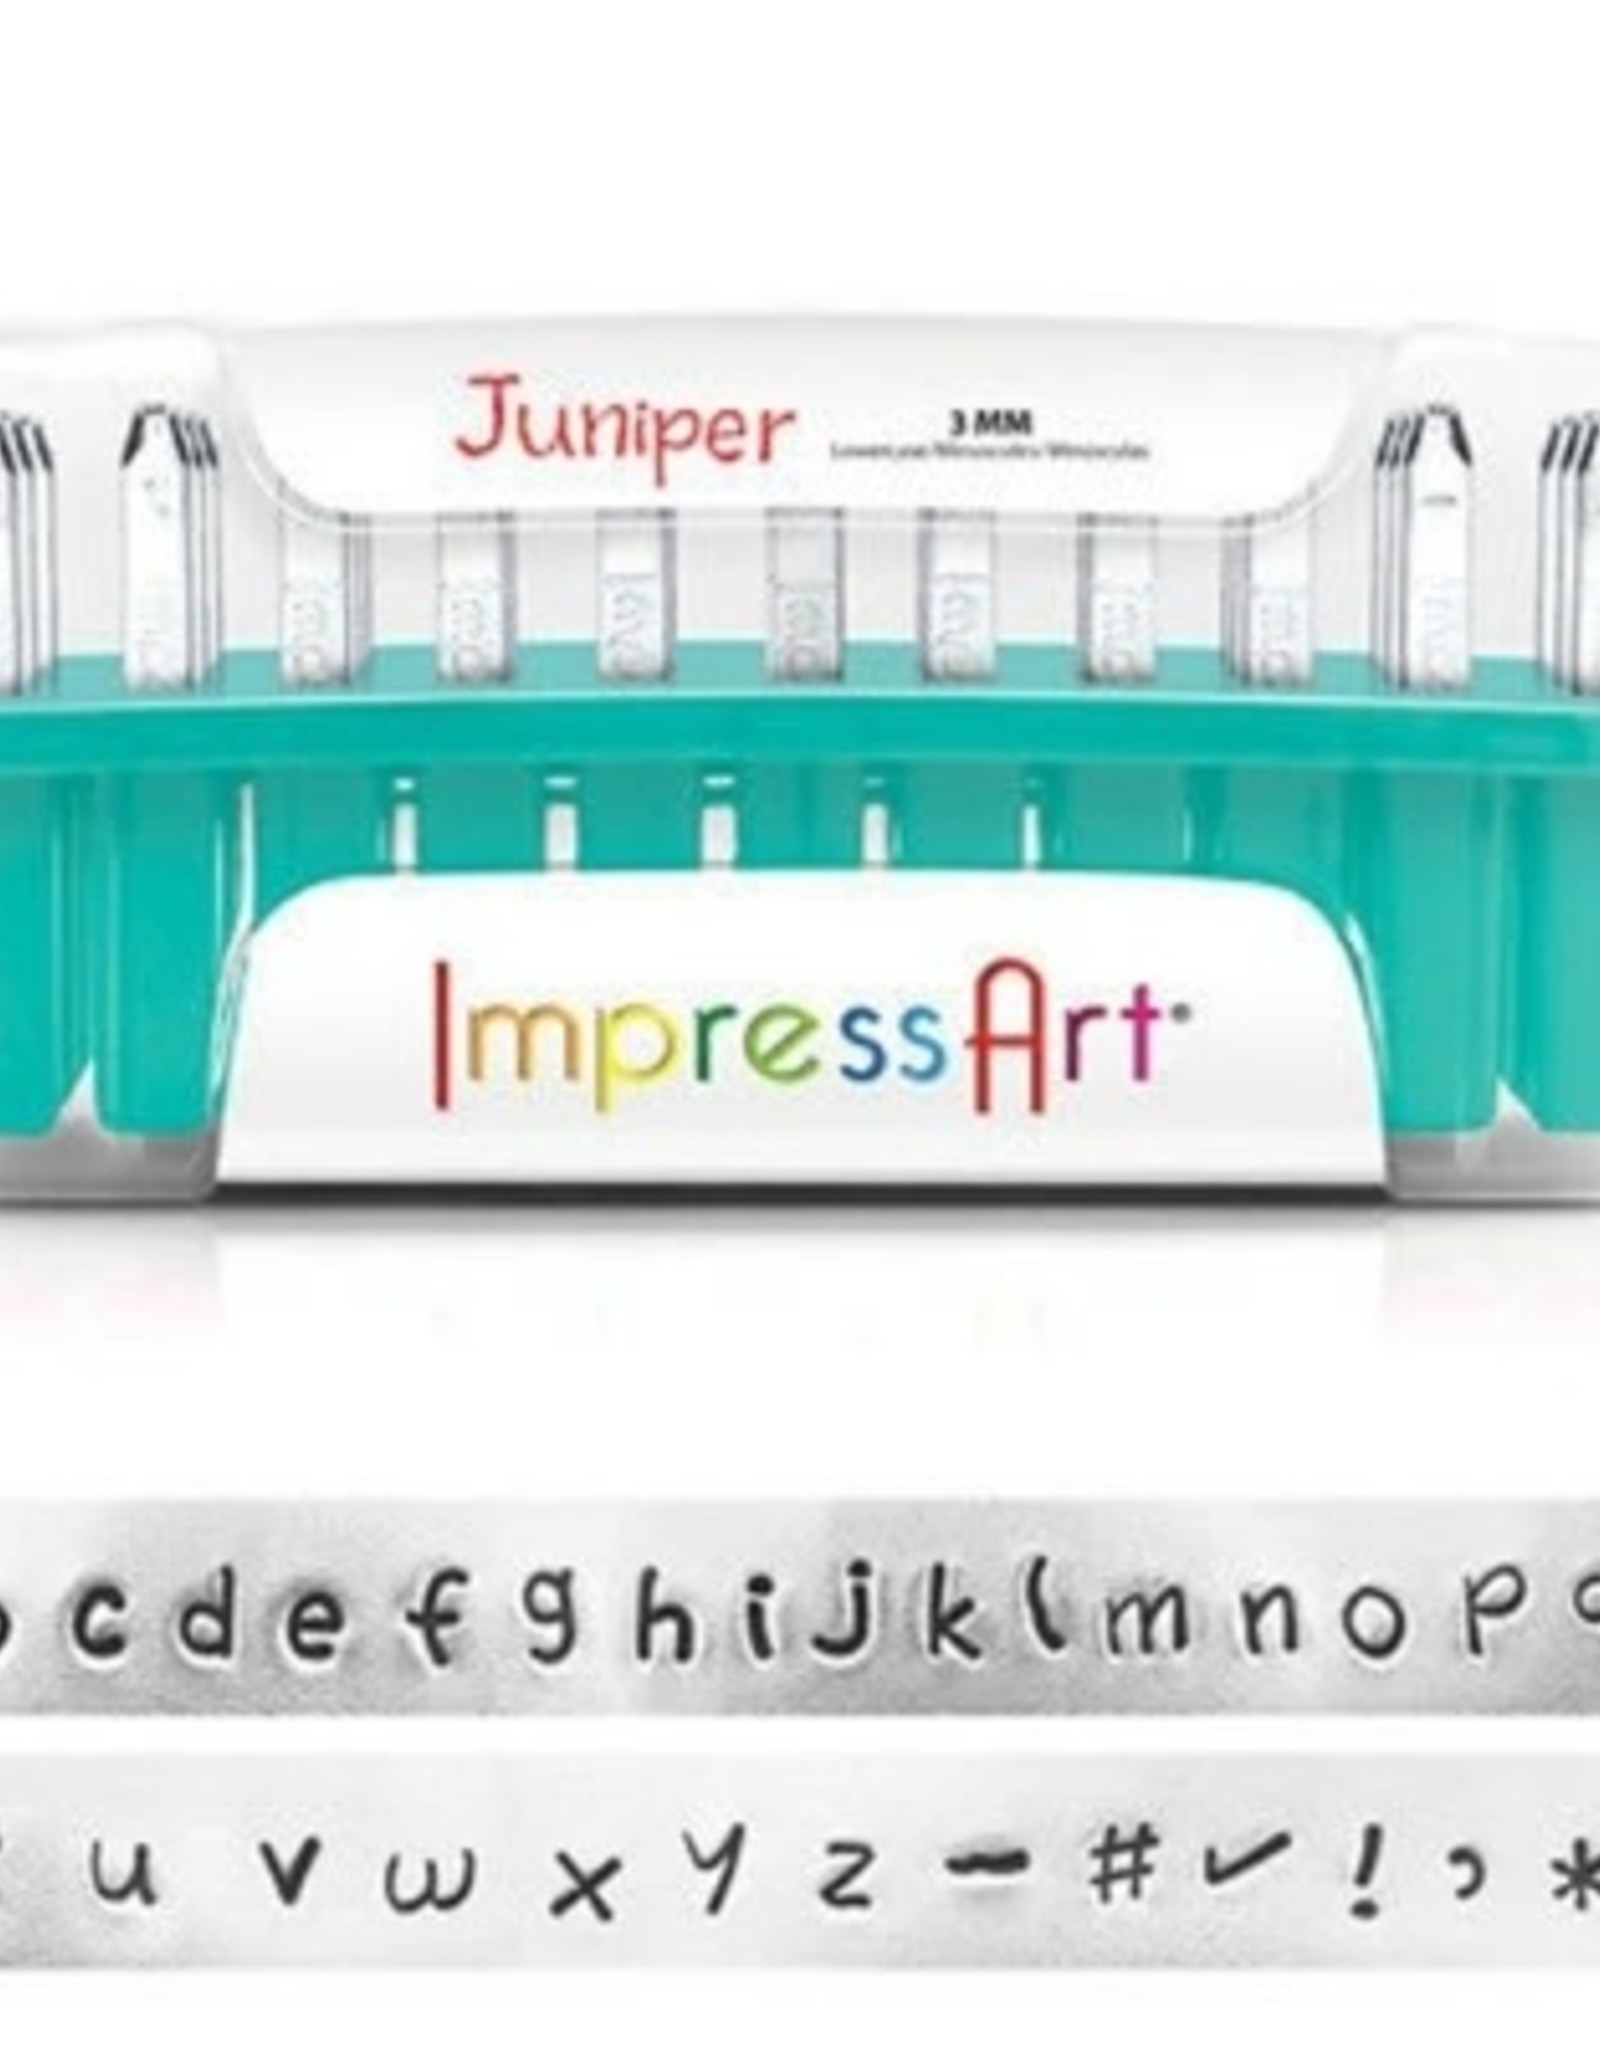 Beadsmith Impressart Juniper Letter Stamp Set 3mm LOWER